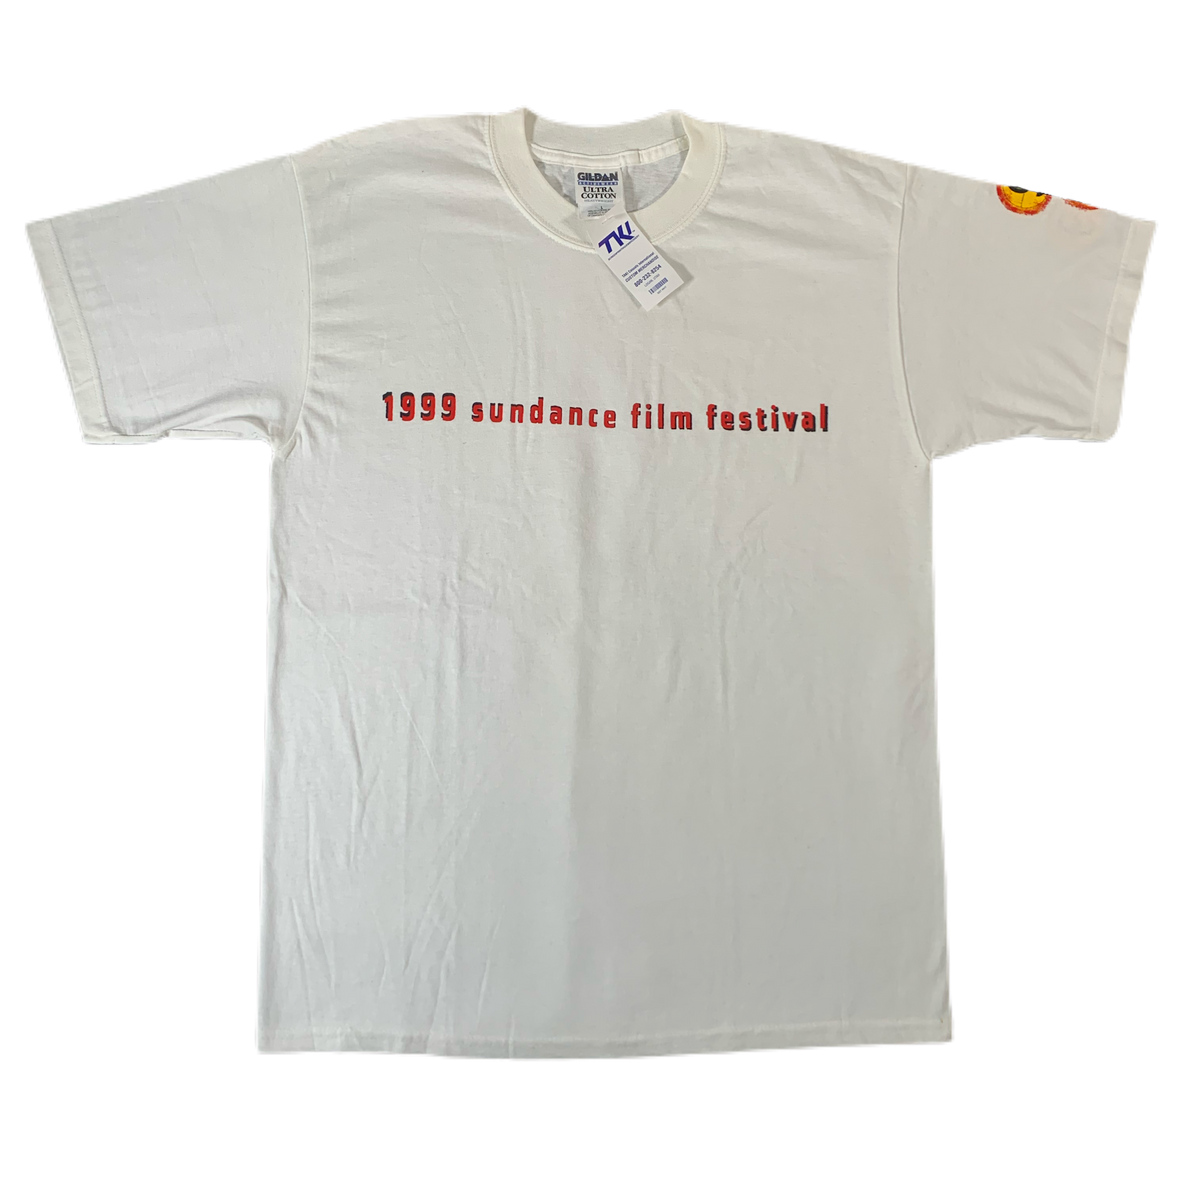 Vintage Sundance Film Festival “1999” T-Shirt - jointcustodydc